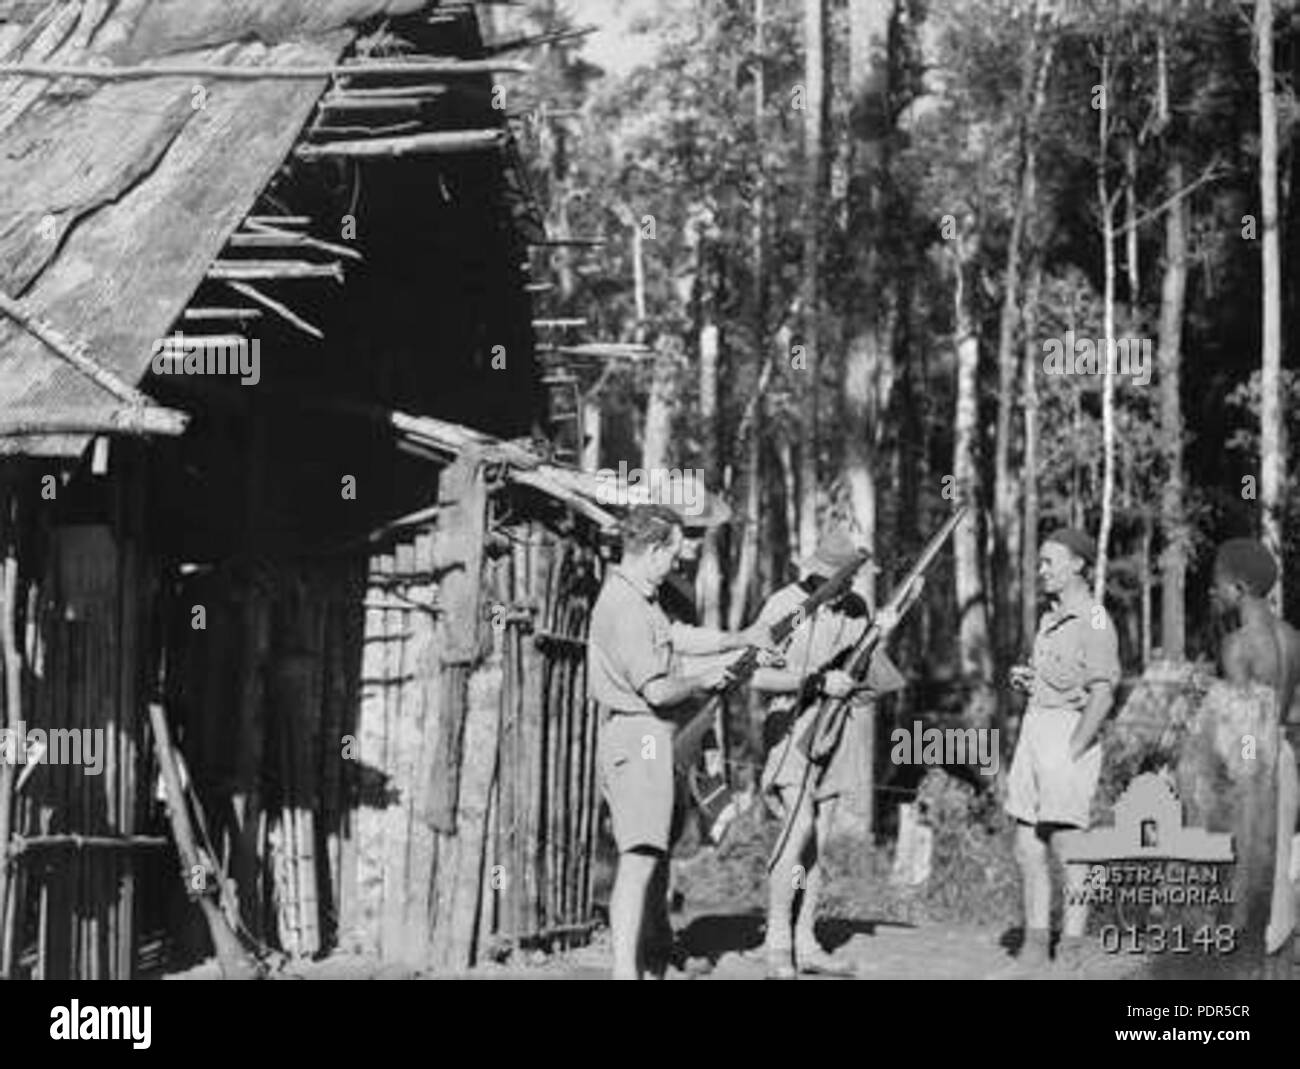 89 NGVR soldiers at Skindewai NG 28 Aug 1942 (AWM 013148) Stock Photo